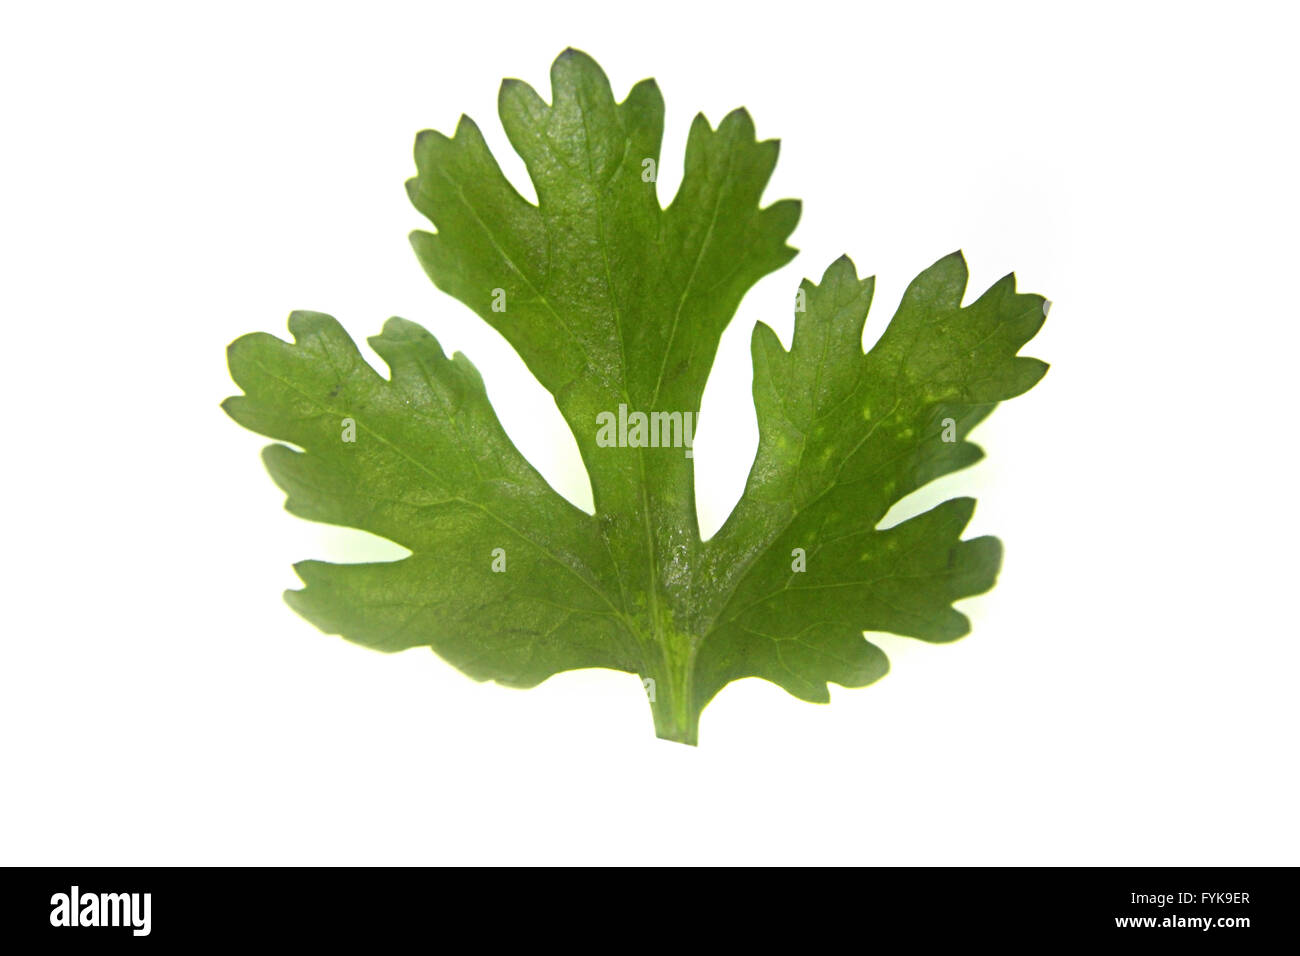 Leaf of Coriander, Coriandrum sativum Stock Photo